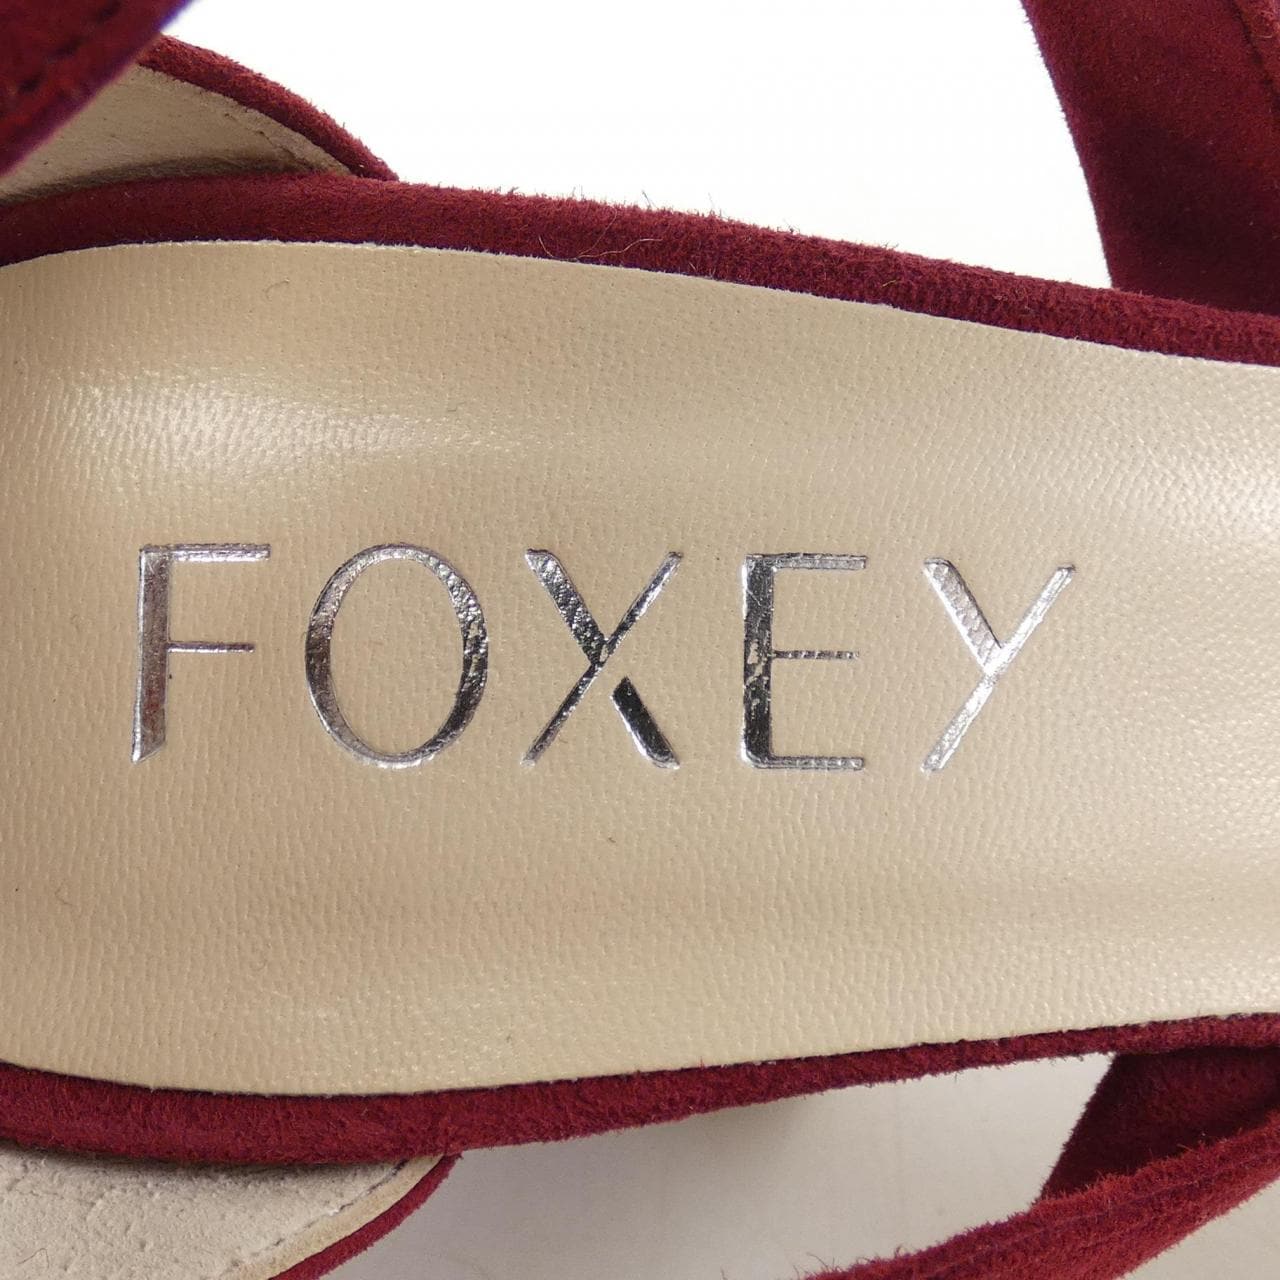 FOXEY FOXEY sandals